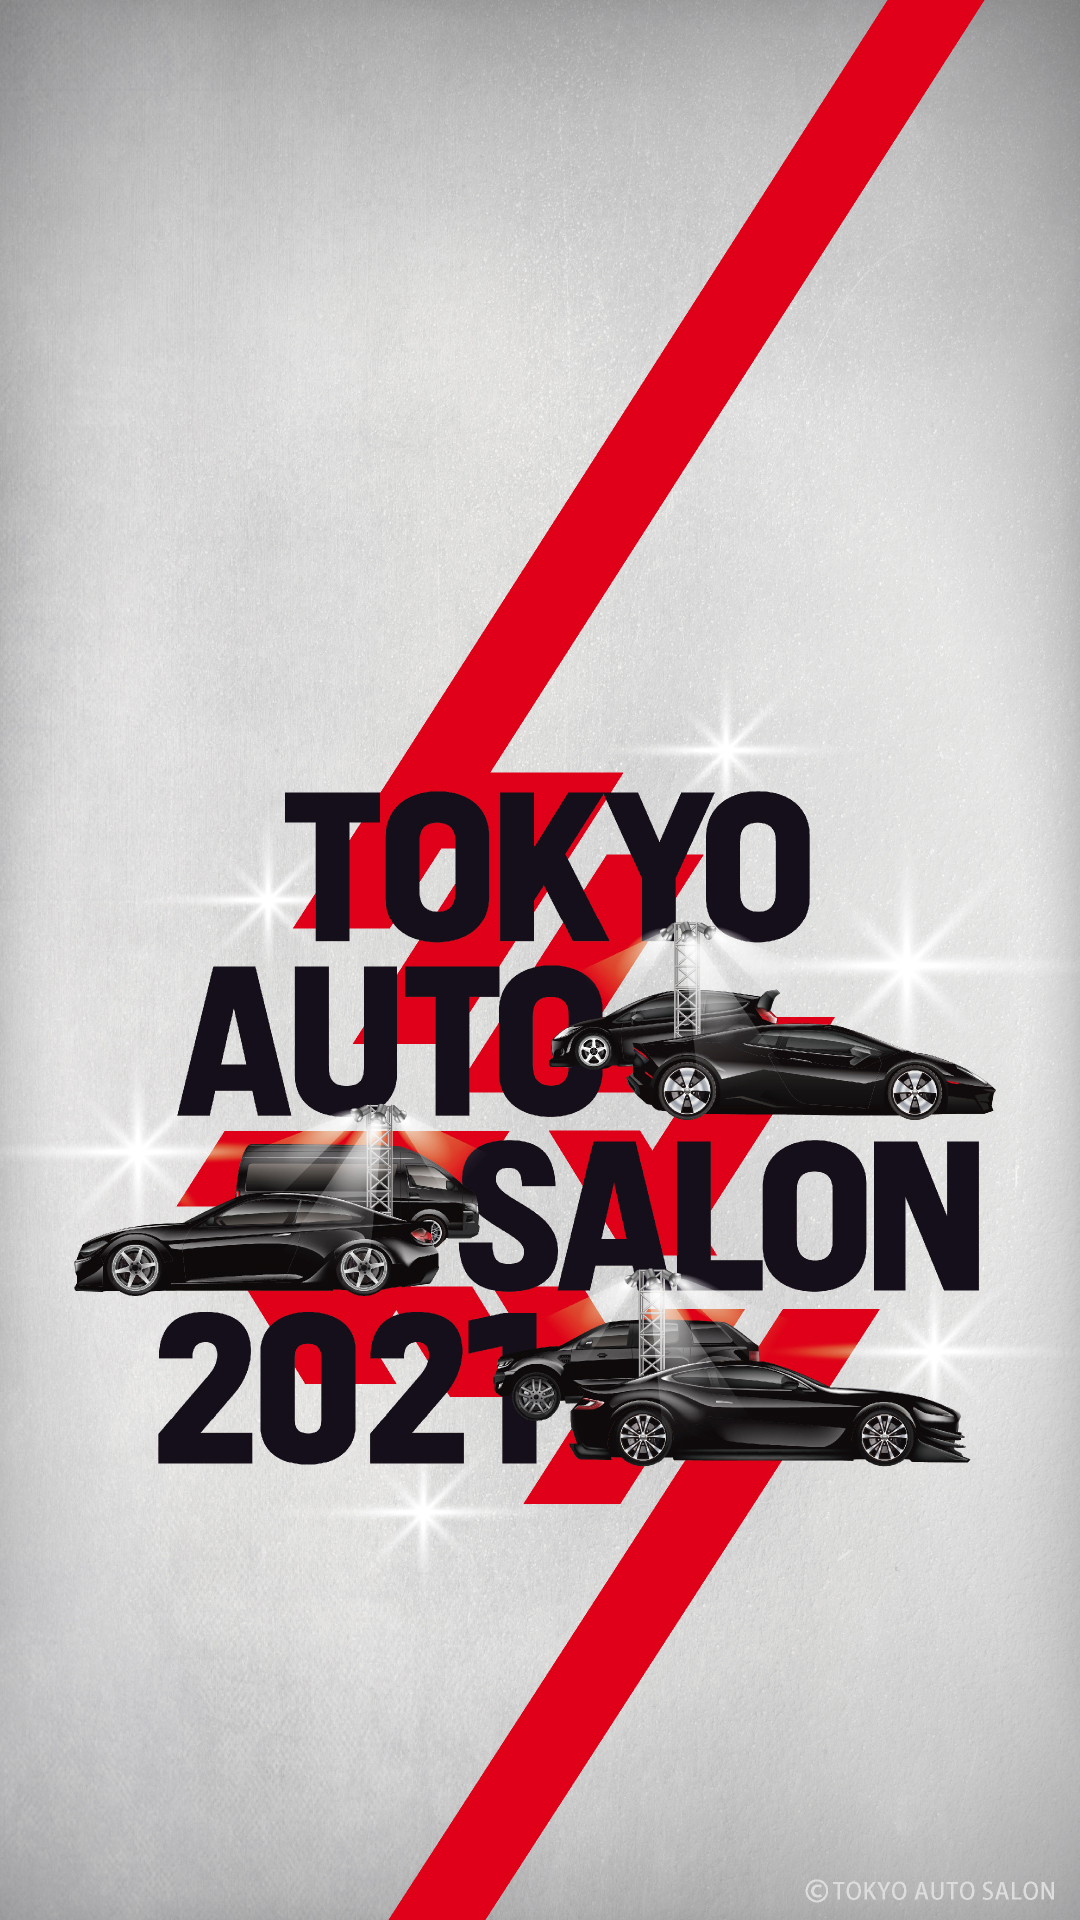 東京オートサロン2021 キービジュアルのスマートフォン用壁紙